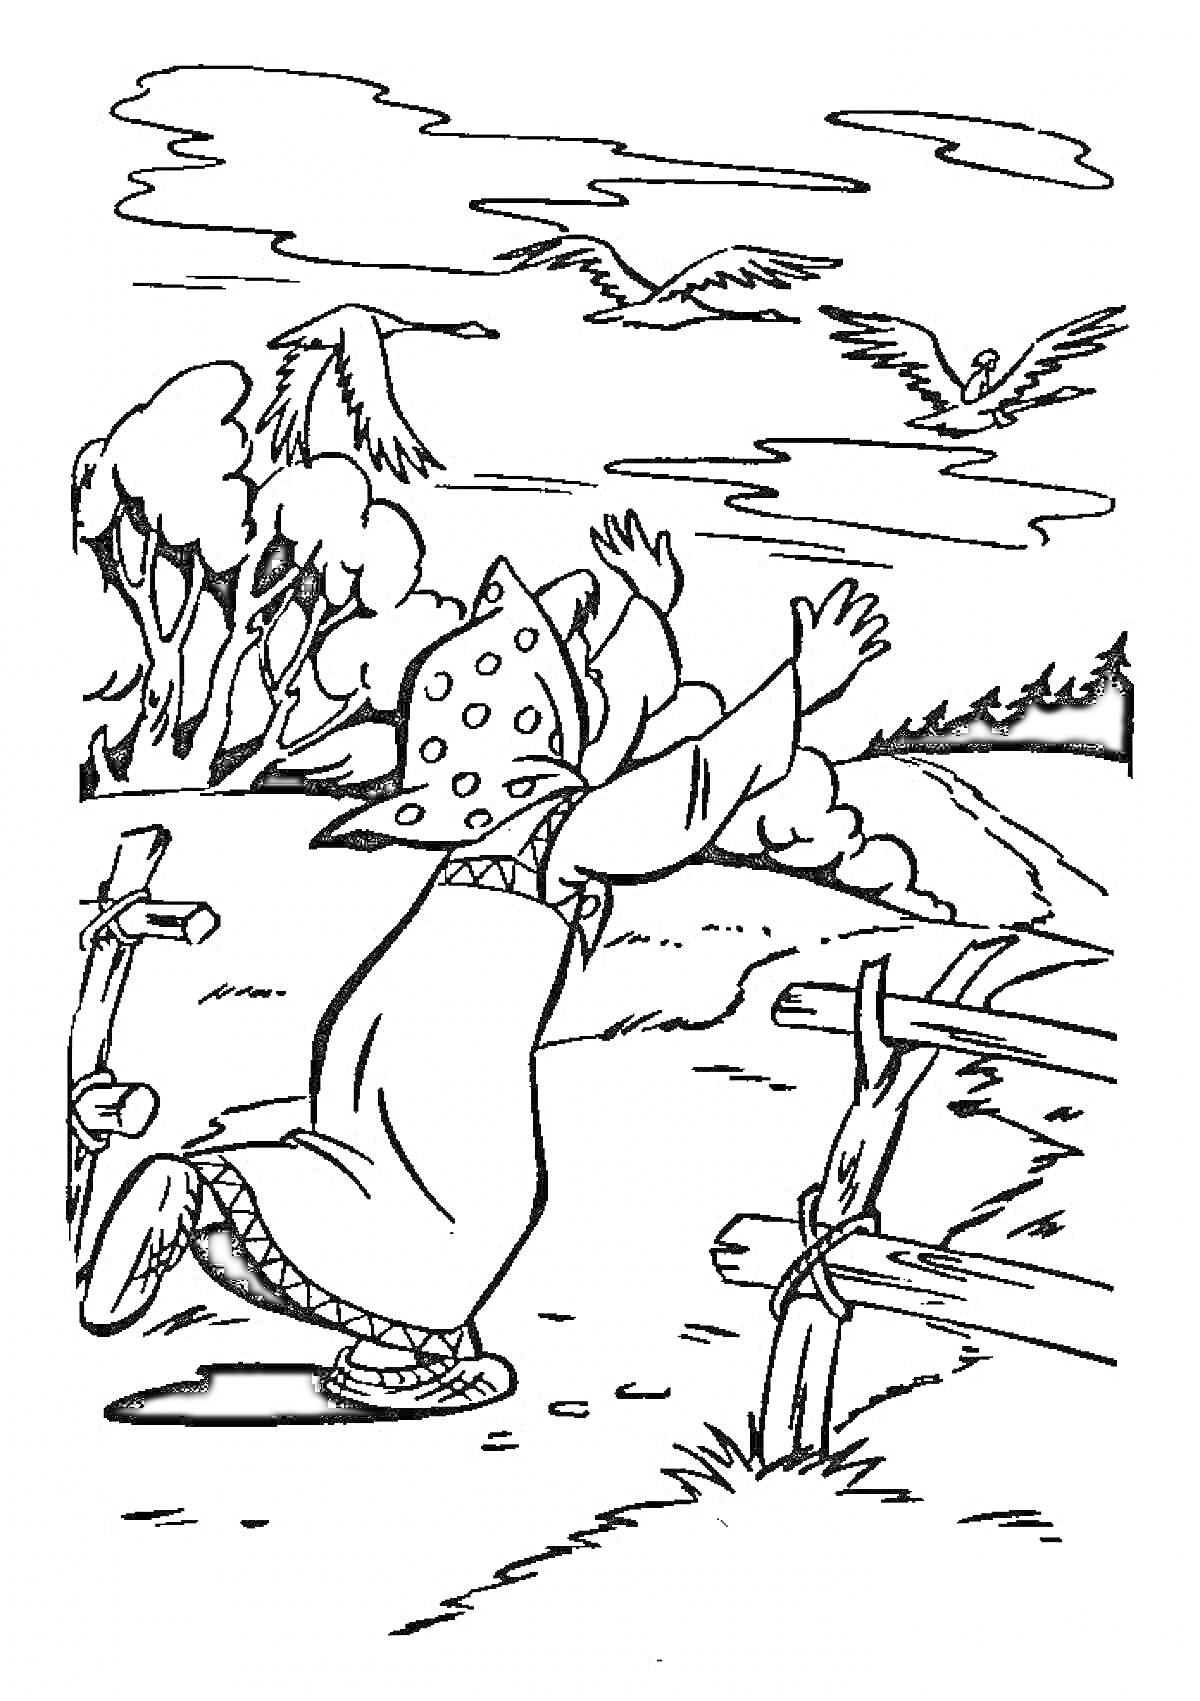 Девочка машет вслед улетающим гусям-летебедям, рядом деревянный забор, деревья и облака на фоне